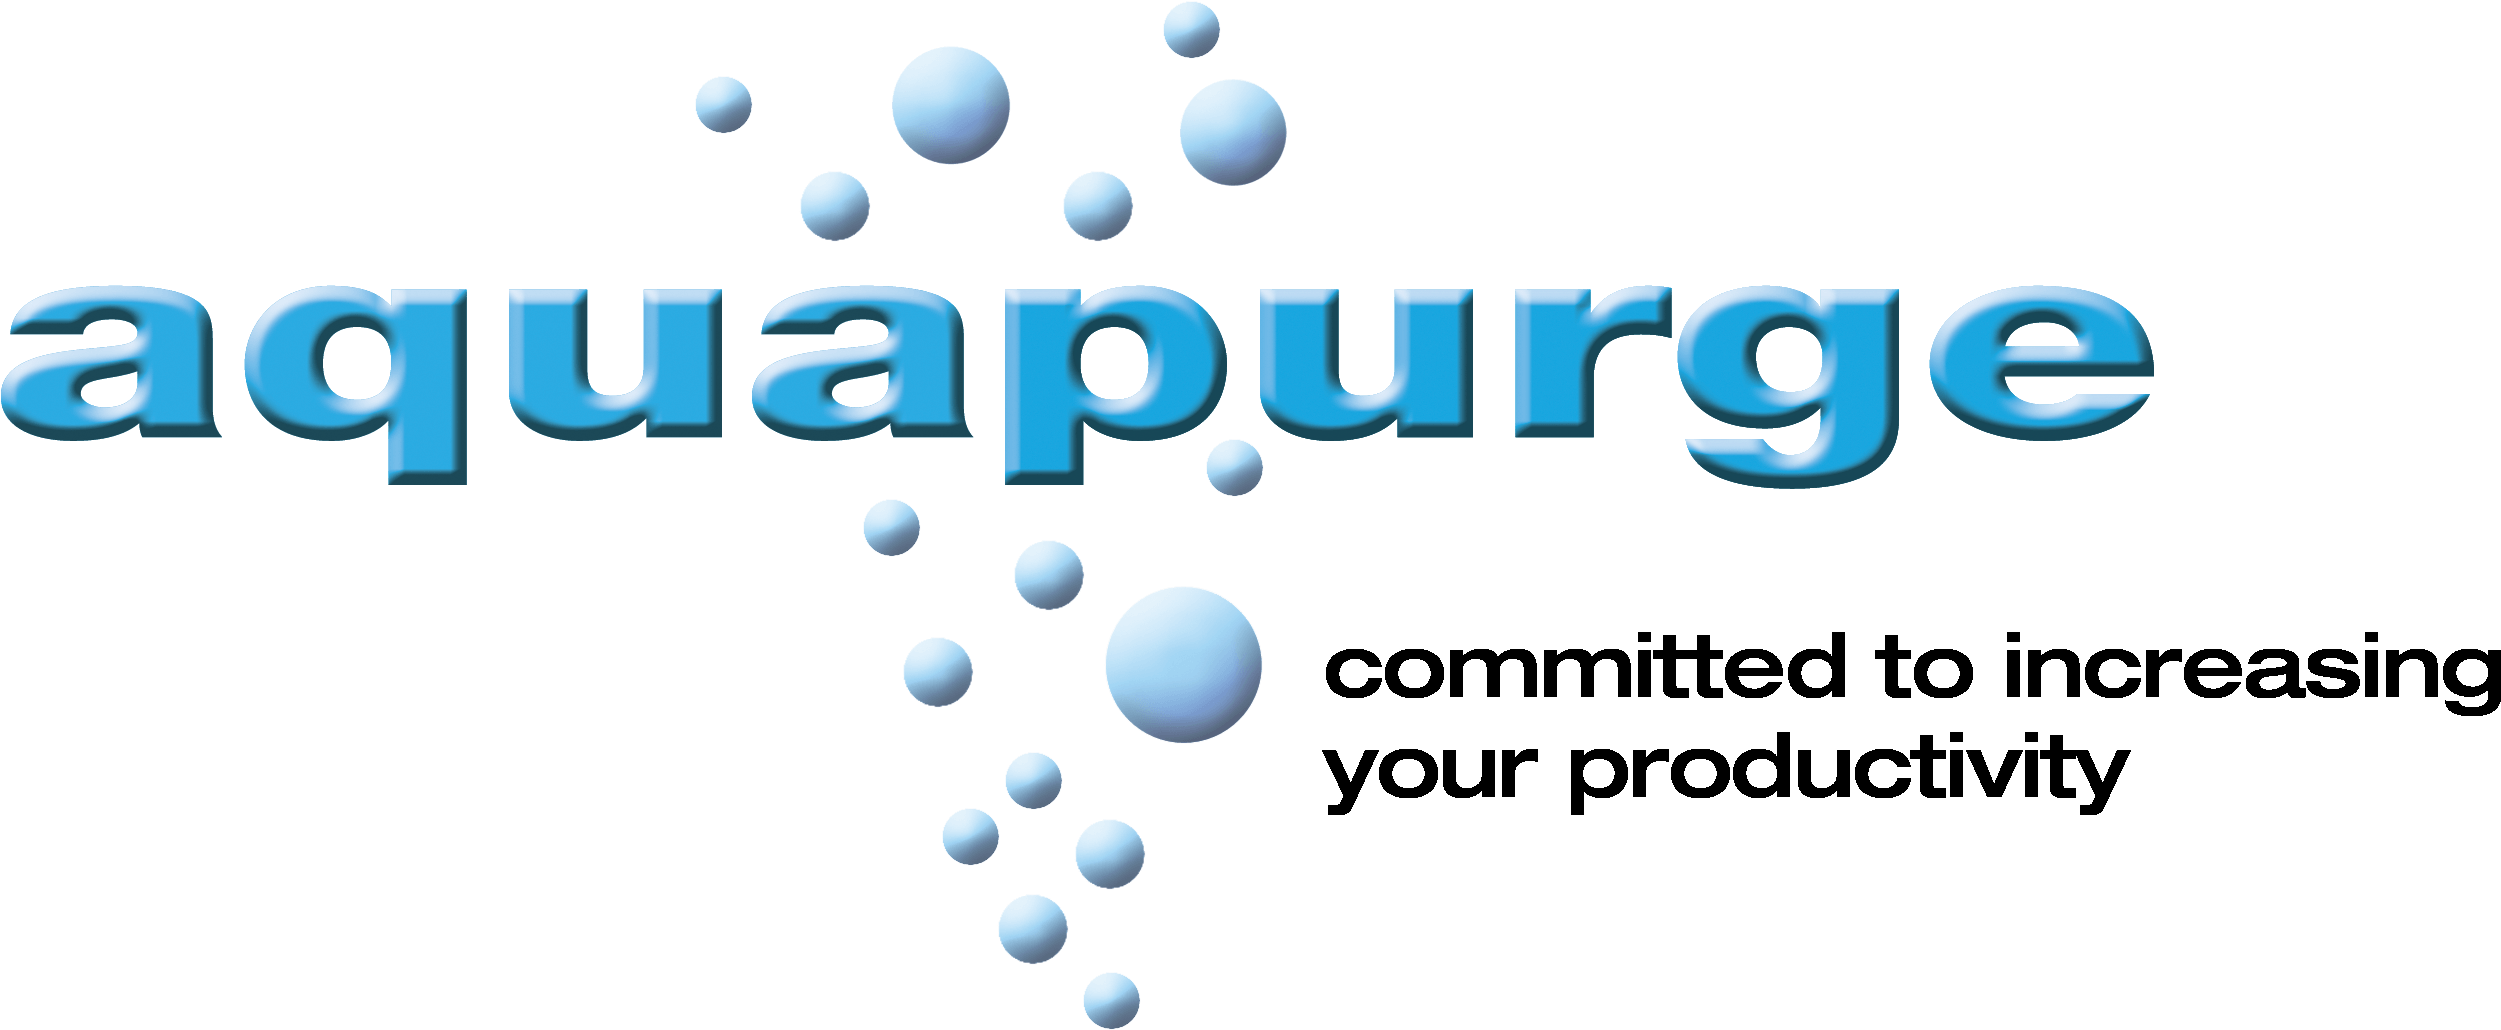 Http - //www - Aquapurge - Com/wp Aqua3dblue3 2017 - Trade Bloc Clipart (2601x1063), Png Download